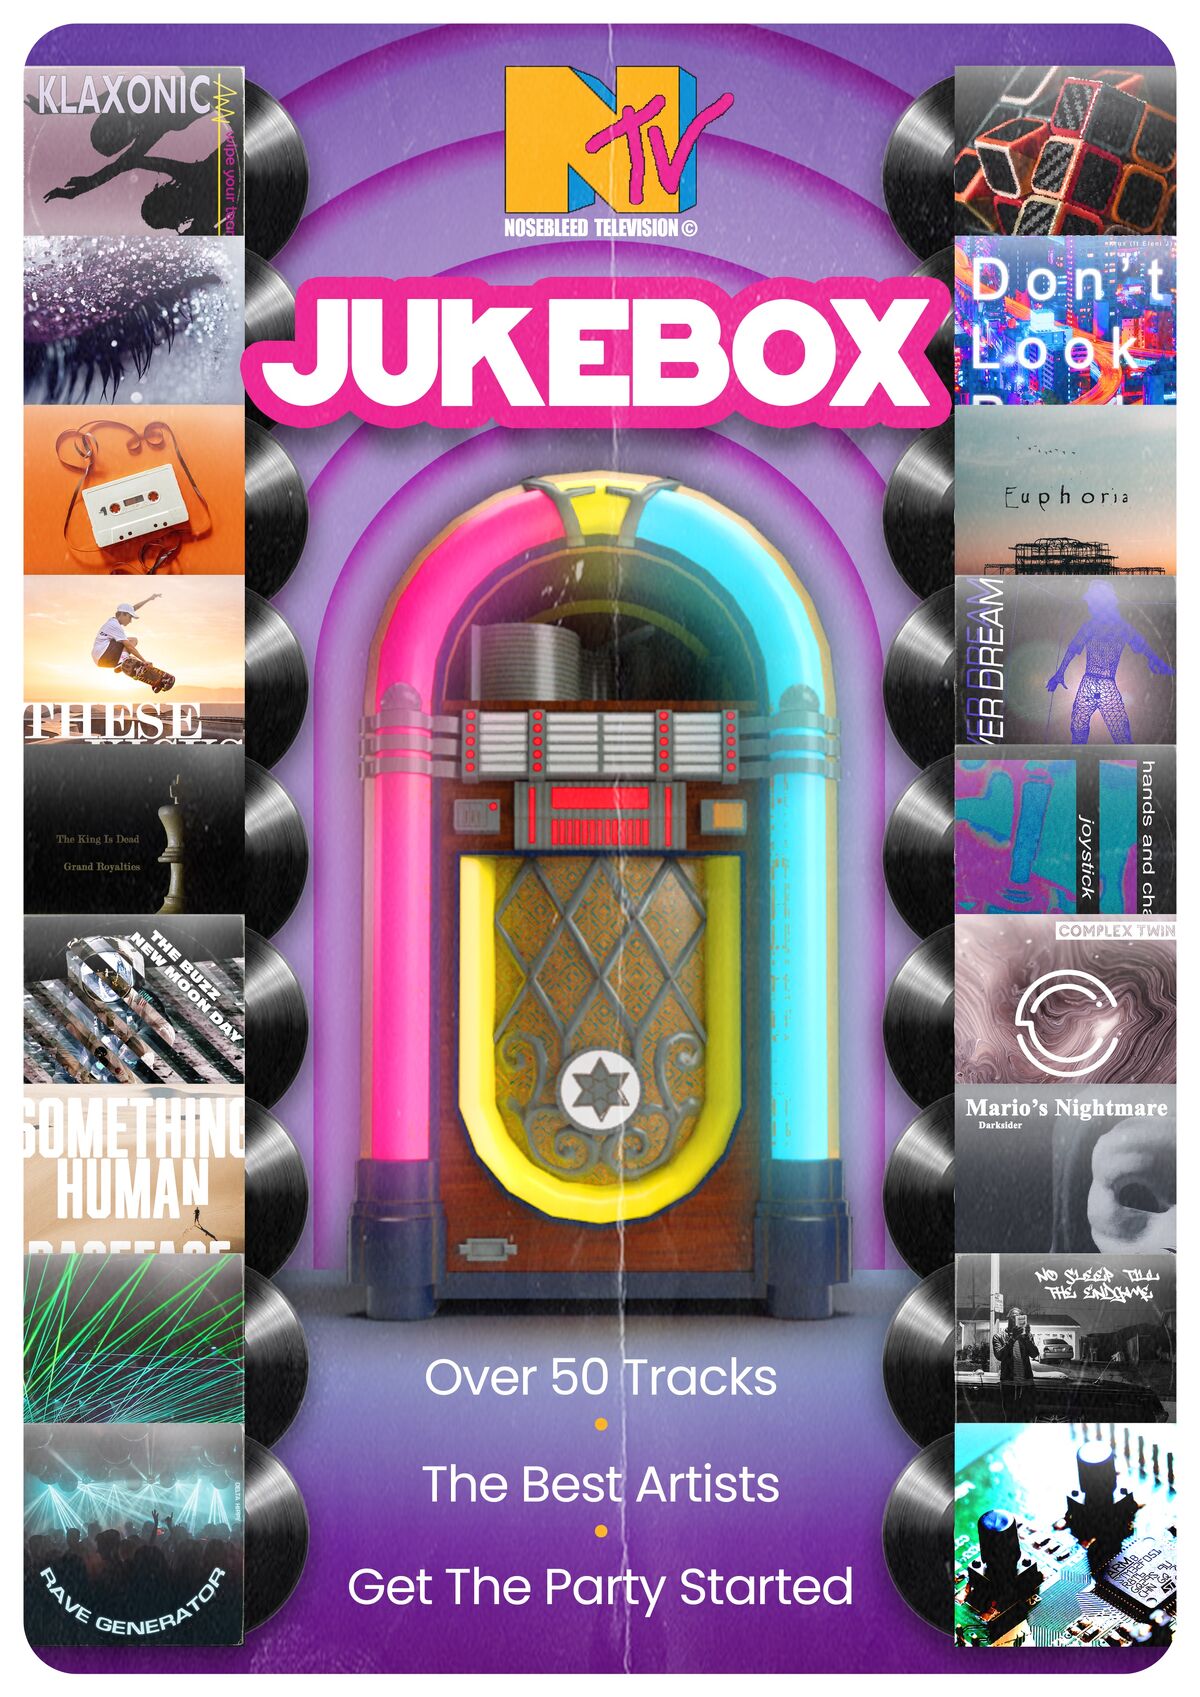 Jukebox | ArcadeParadise Wiki | Fandom